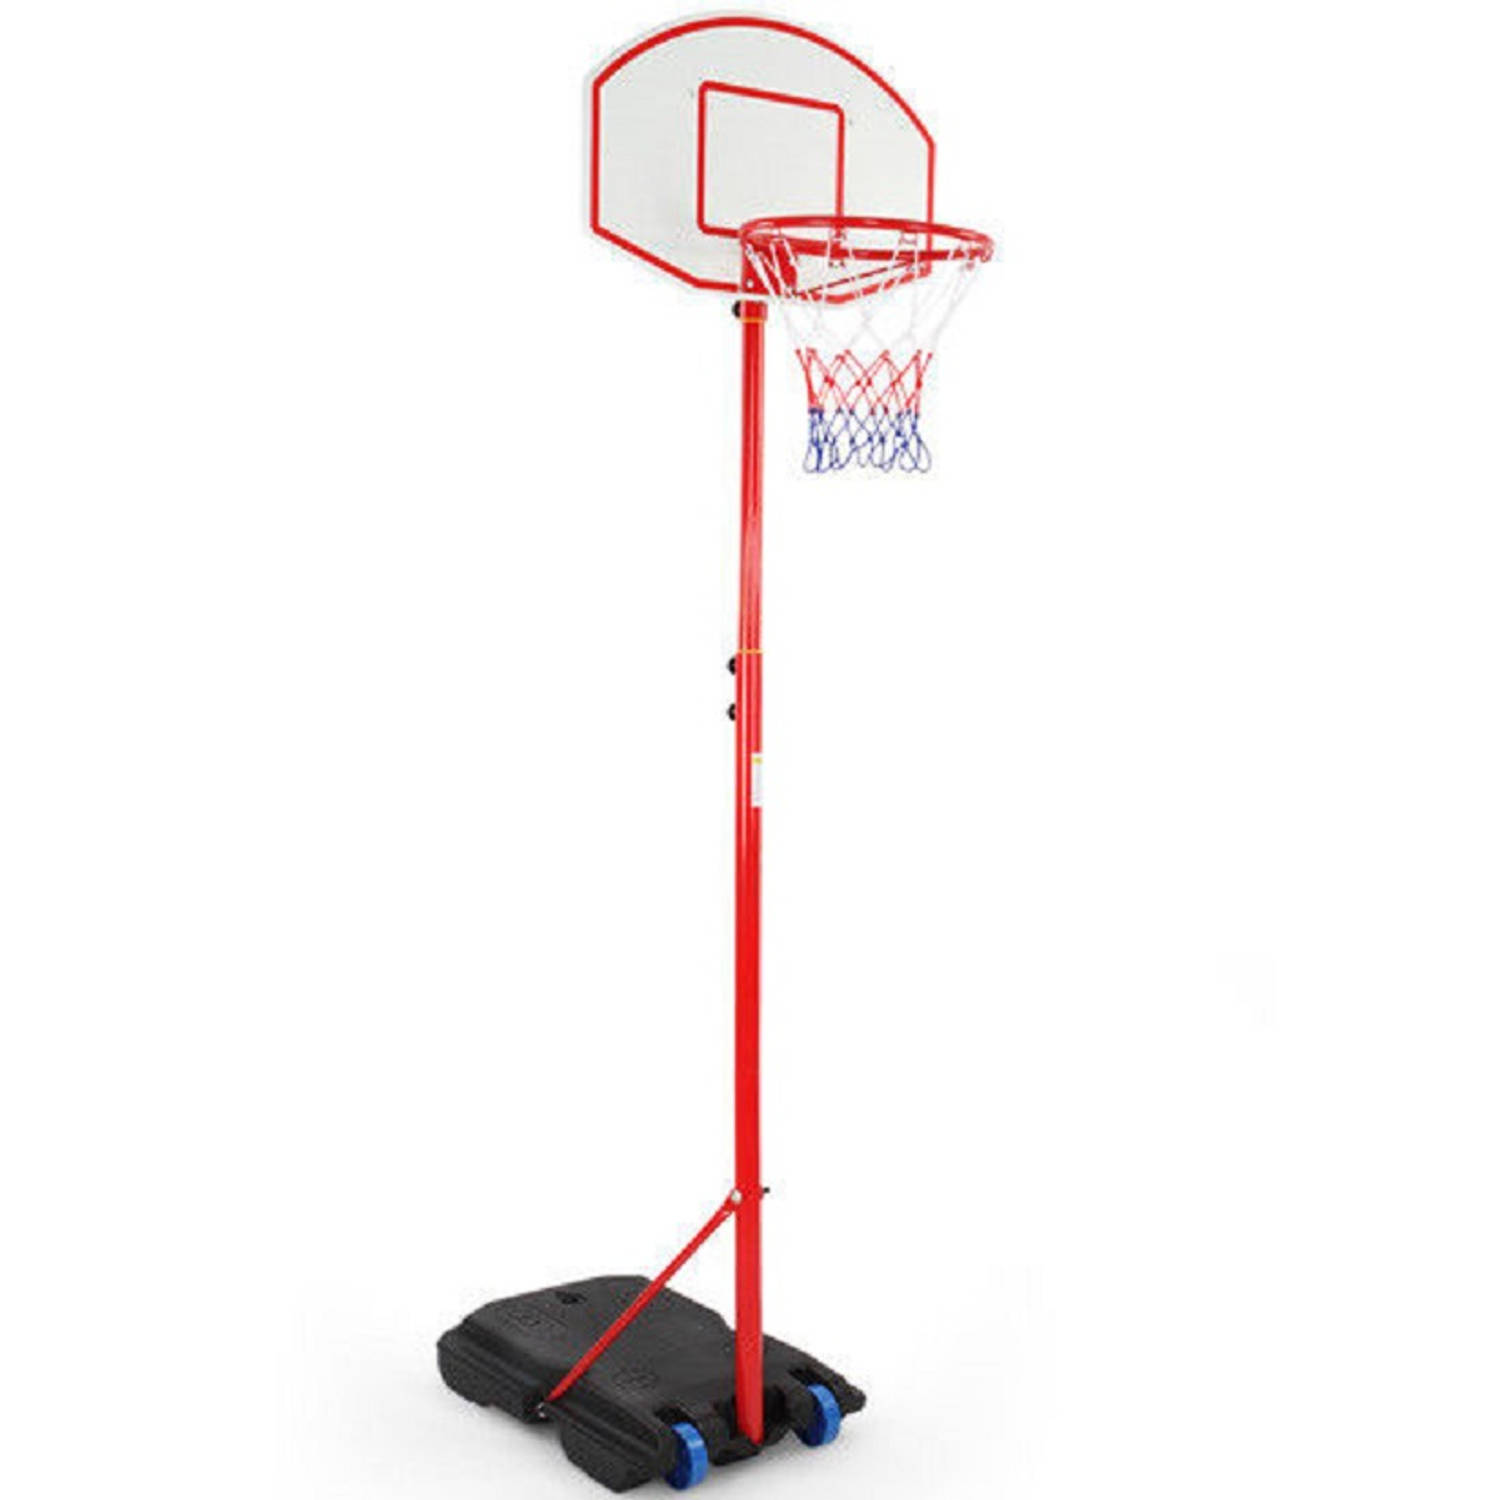 In hoogte verstelbare basketbalring, verrijdbare basketbalring, mobiele basketbalring, basketbalring